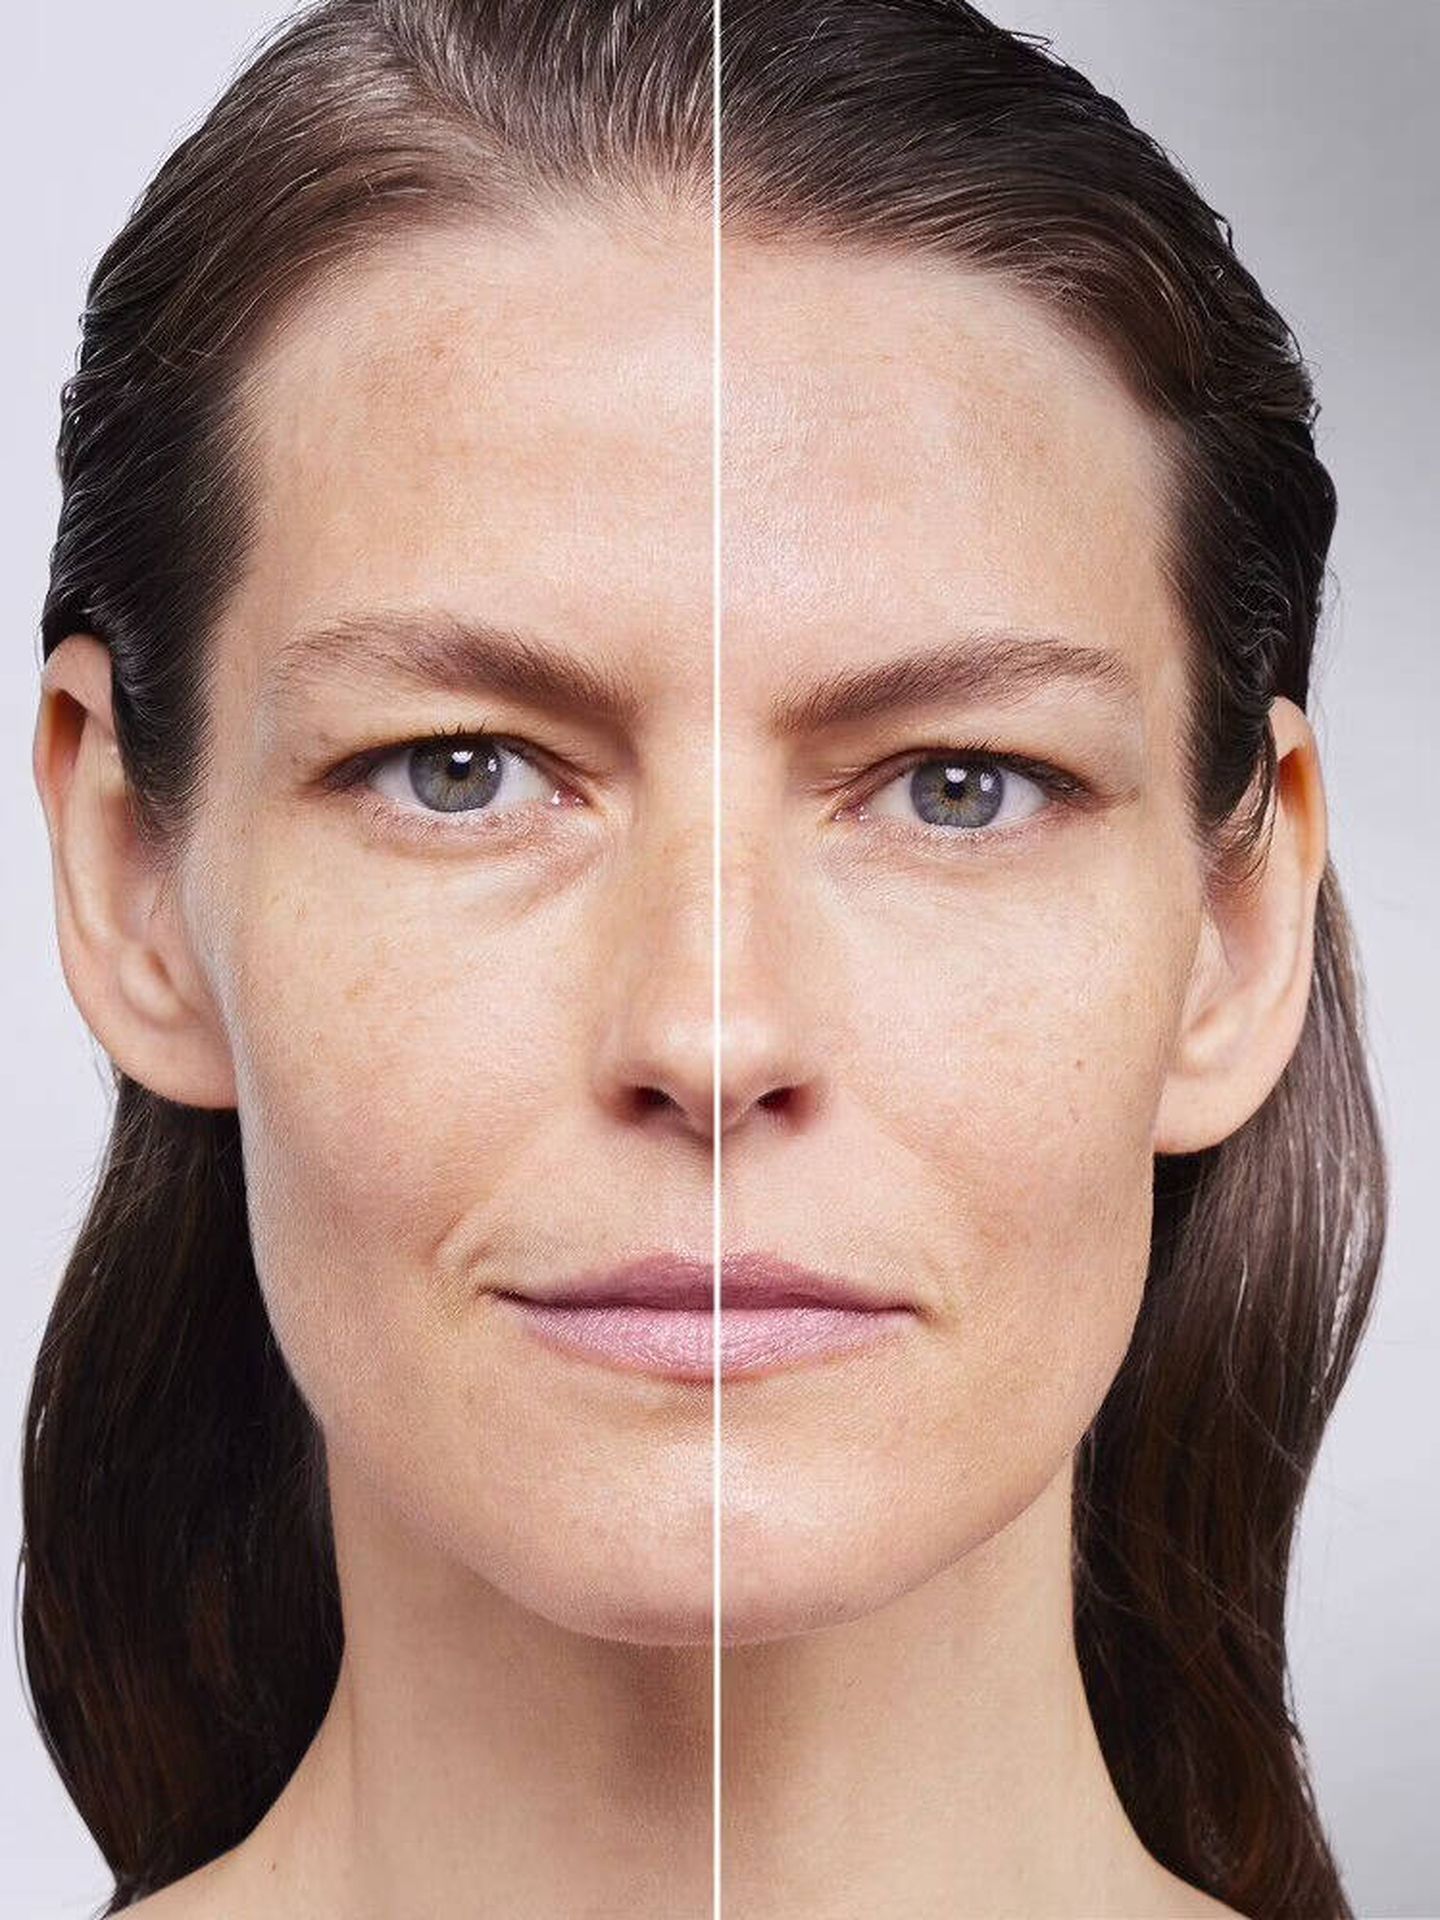 Resultados en piel del tratamiento con Bio-Performance Skin Filler de Shiseido. (Cortesía)